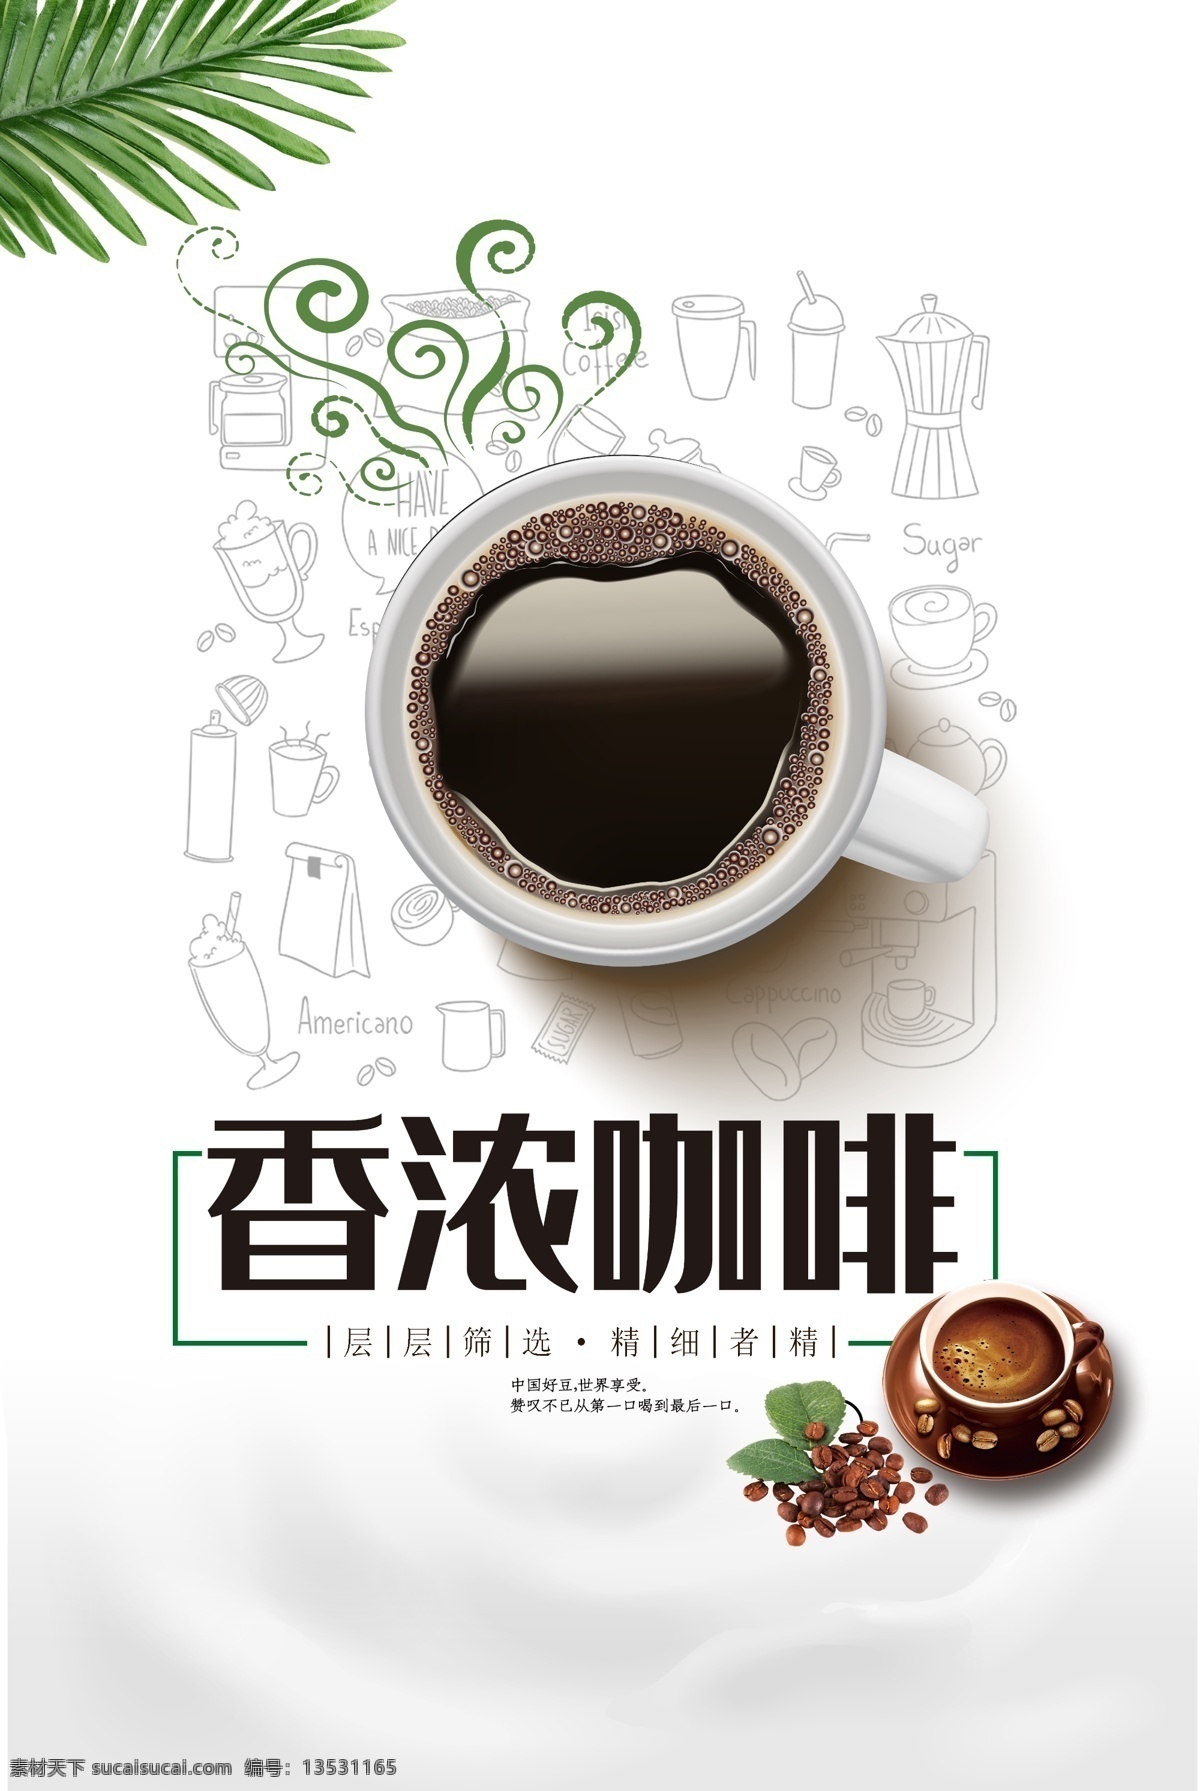 香 浓 咖啡 宣传海报 香浓咖啡 休闲 度假 海报素材